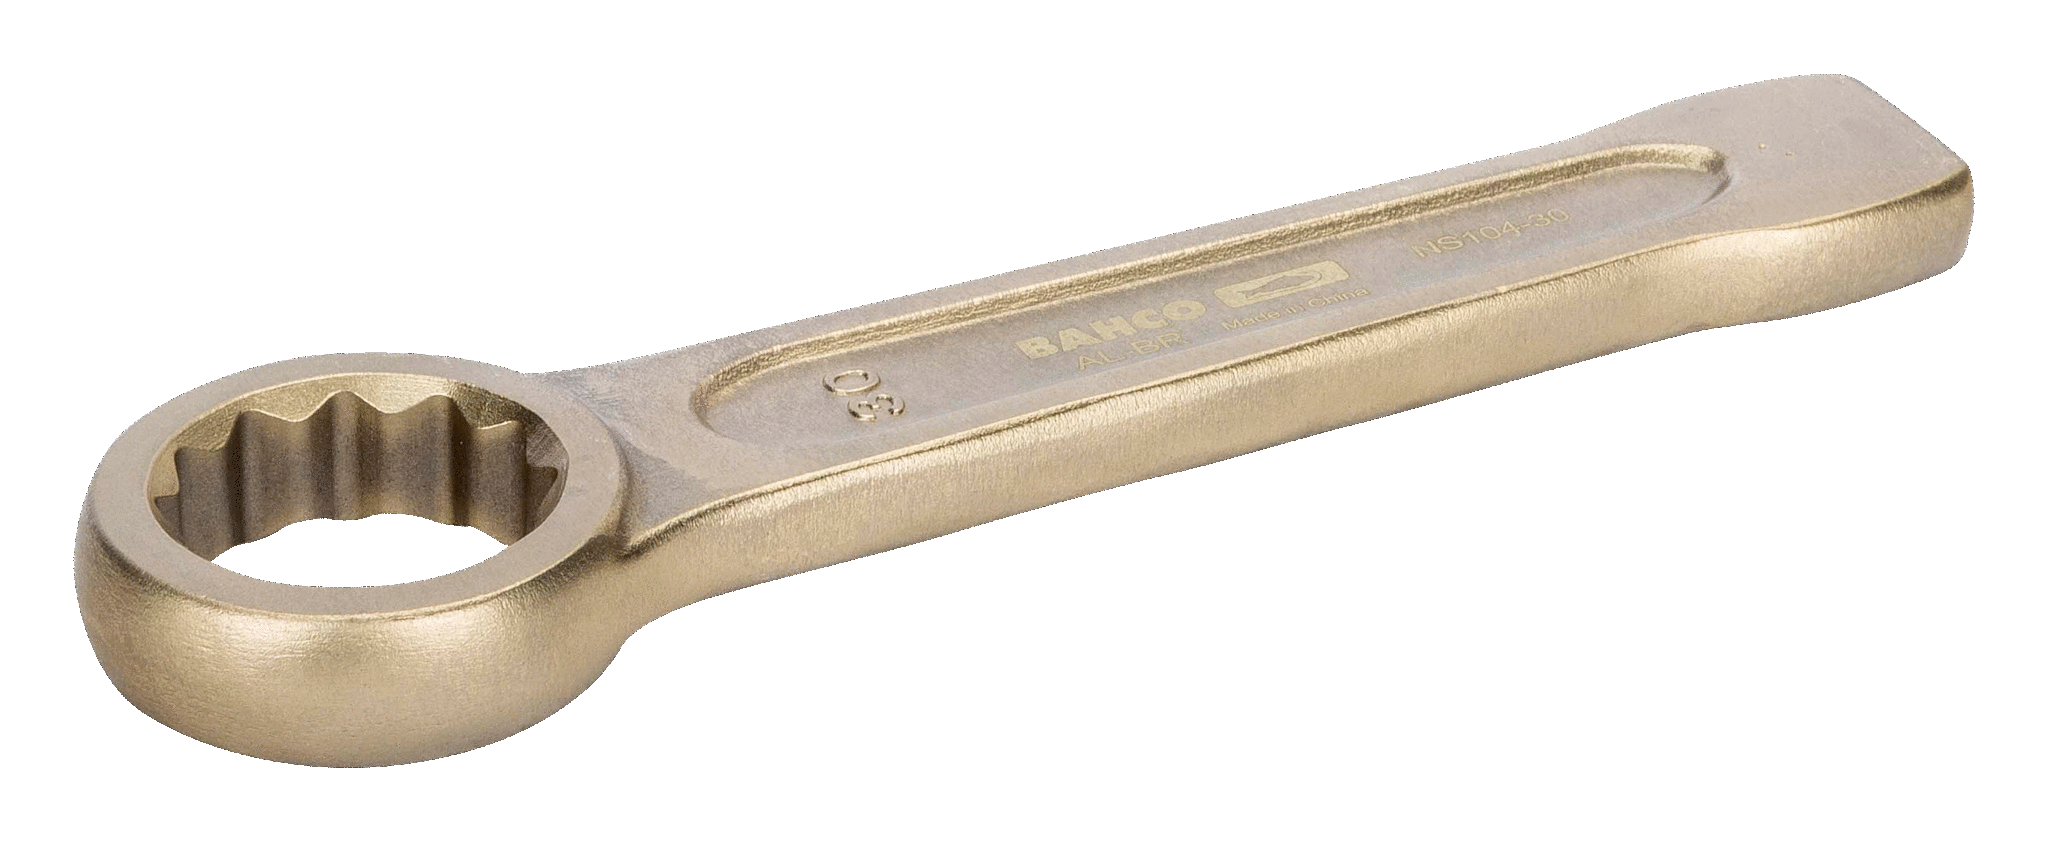 картинка Ударный накидной ключ метрических размеров BAHCO NS104-69 от магазина "Элит-инструмент"